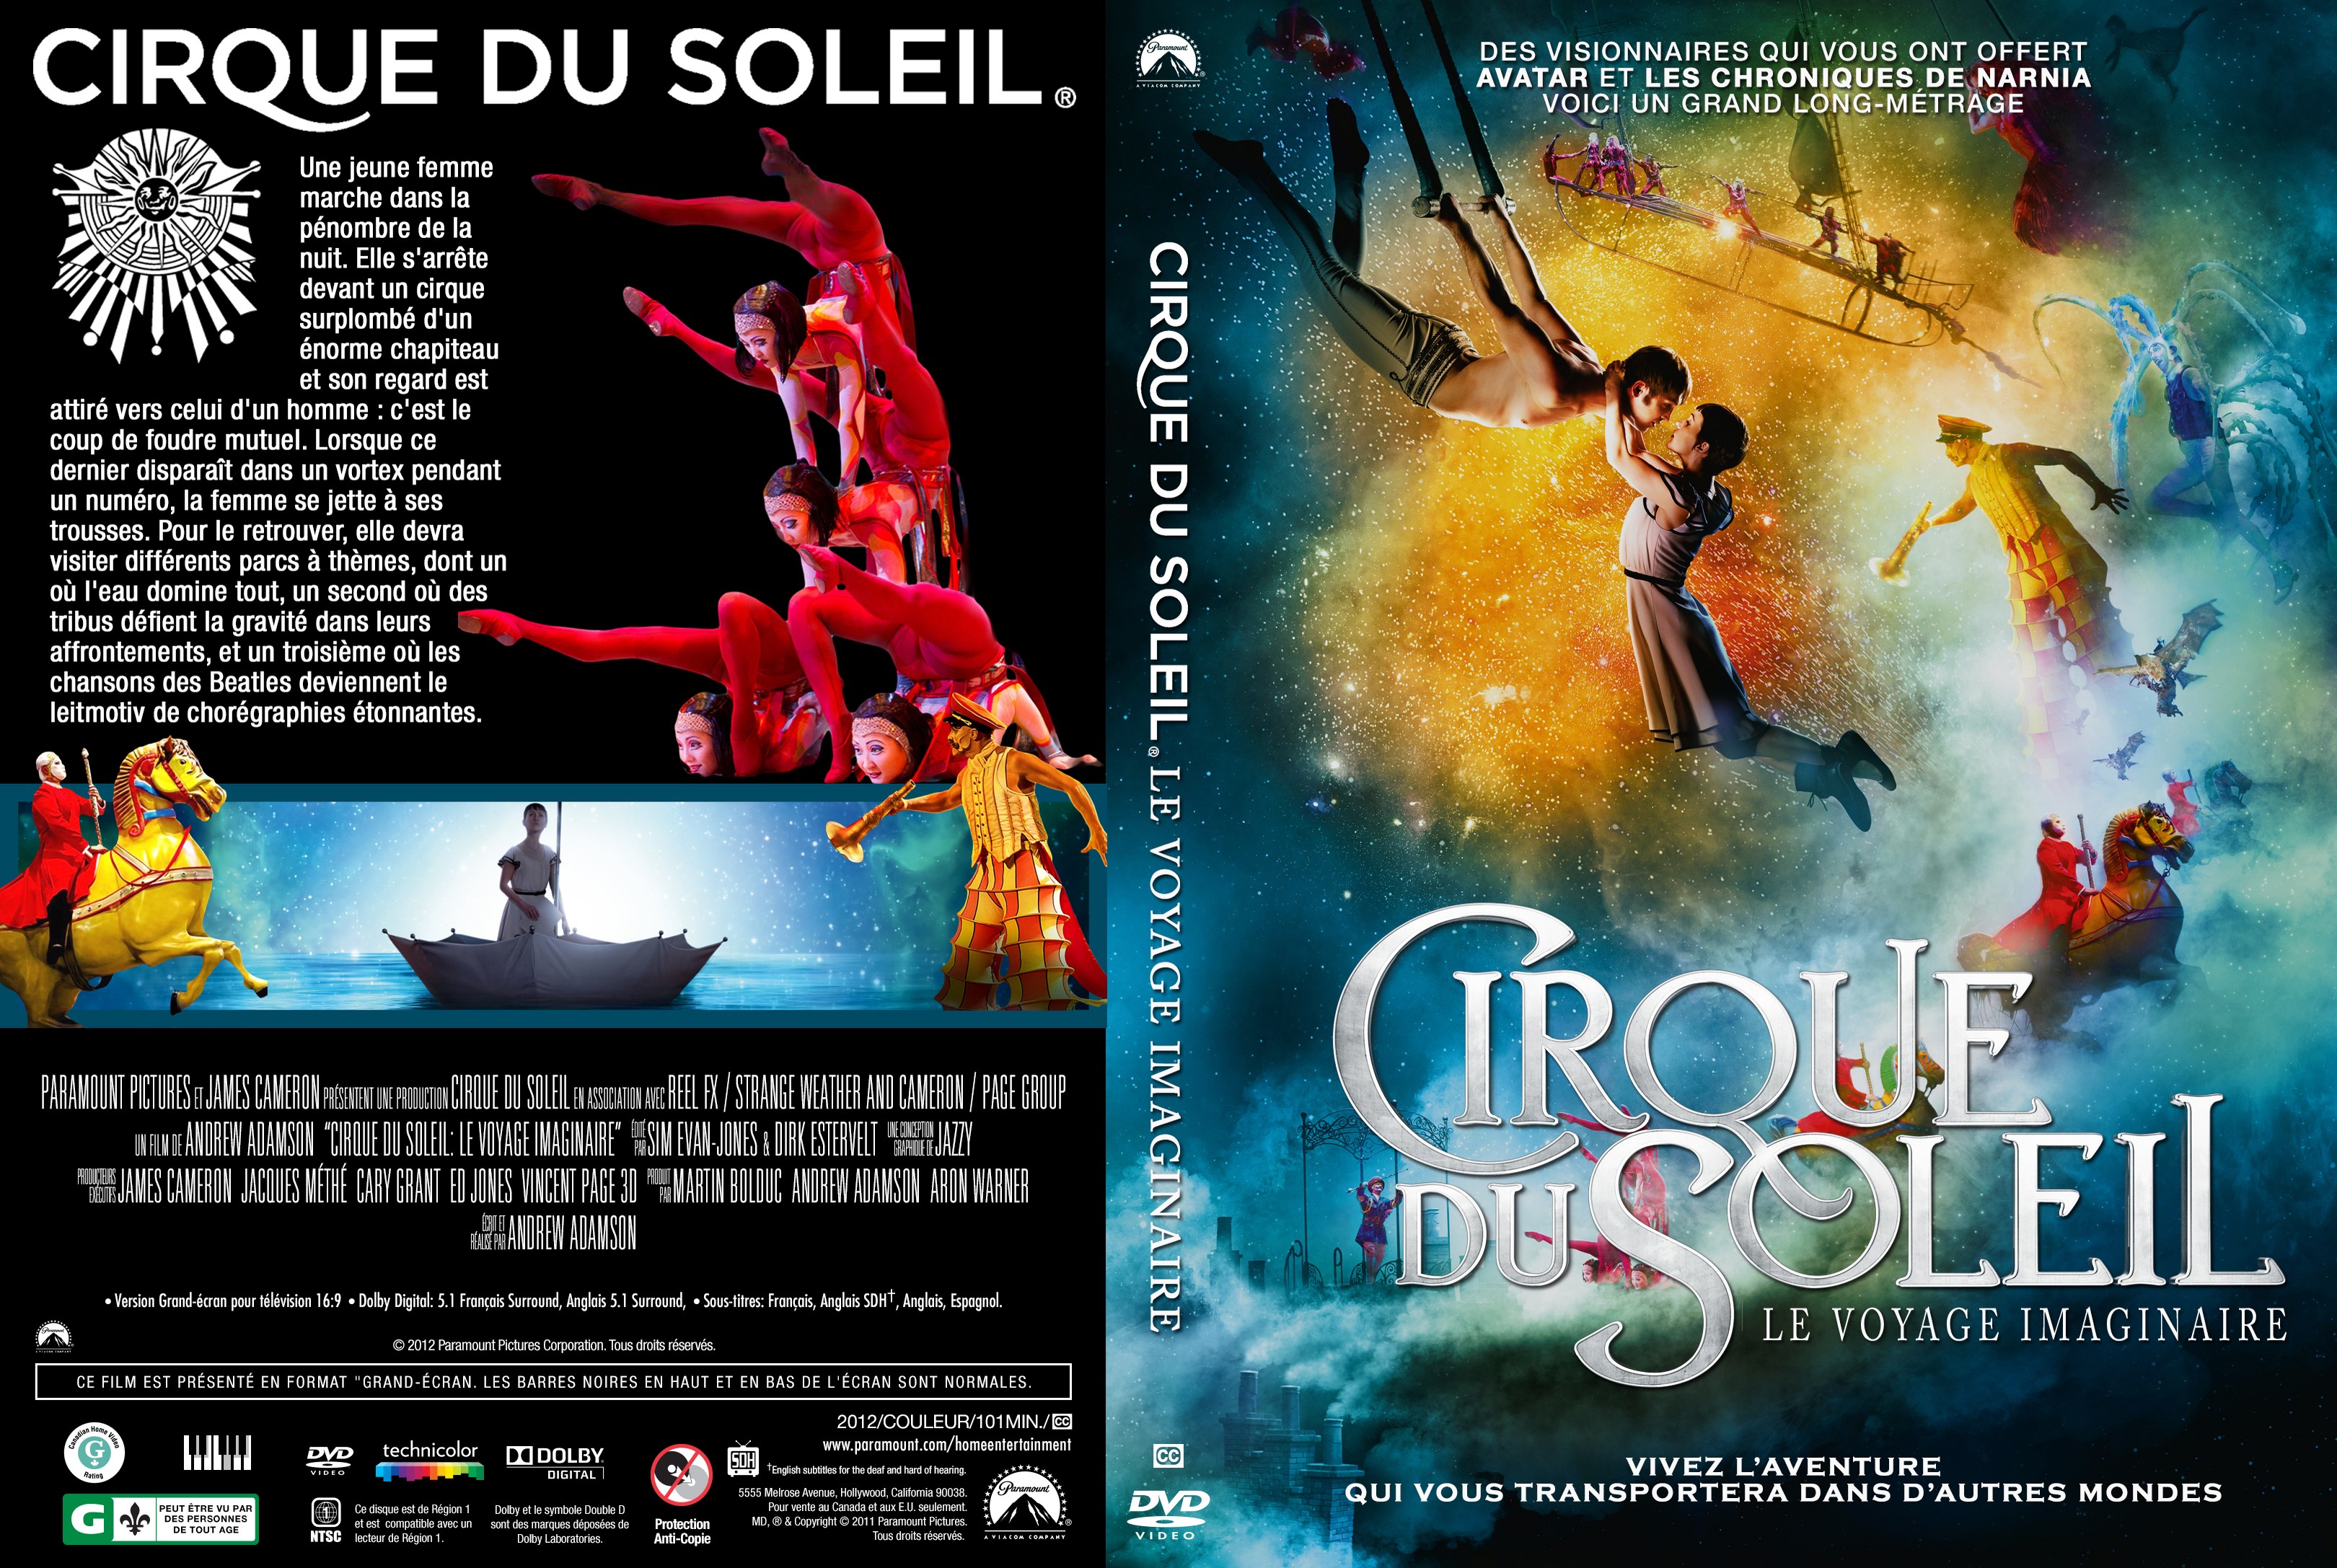 Jaquette DVD Cirque du soleil Le voyage imaginaire custom